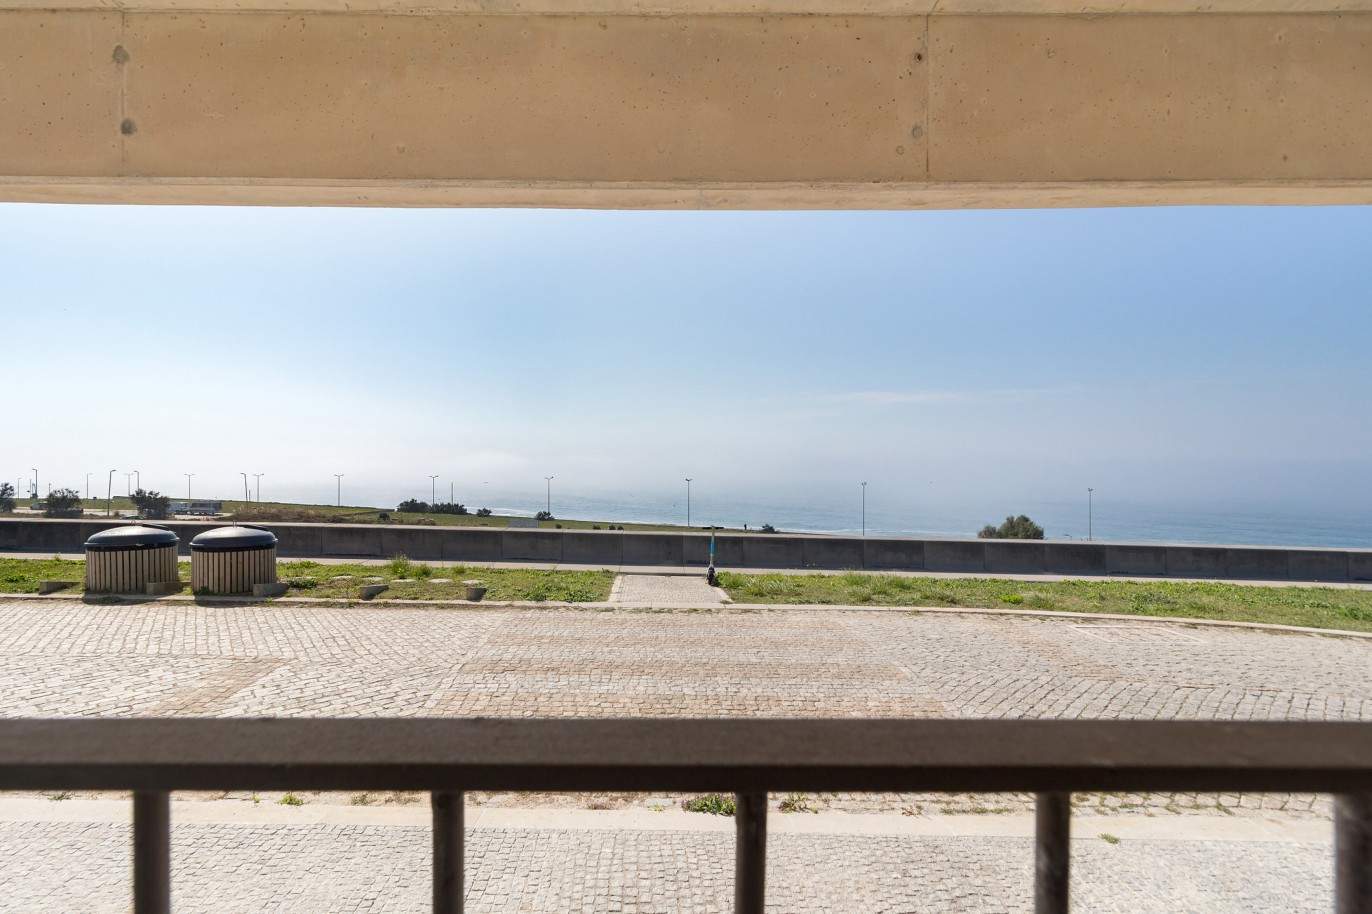 Verkauf: Wohnung mit Meer- und Flussblick, in Canidelo, V. N. Gaia, Portugal_210358